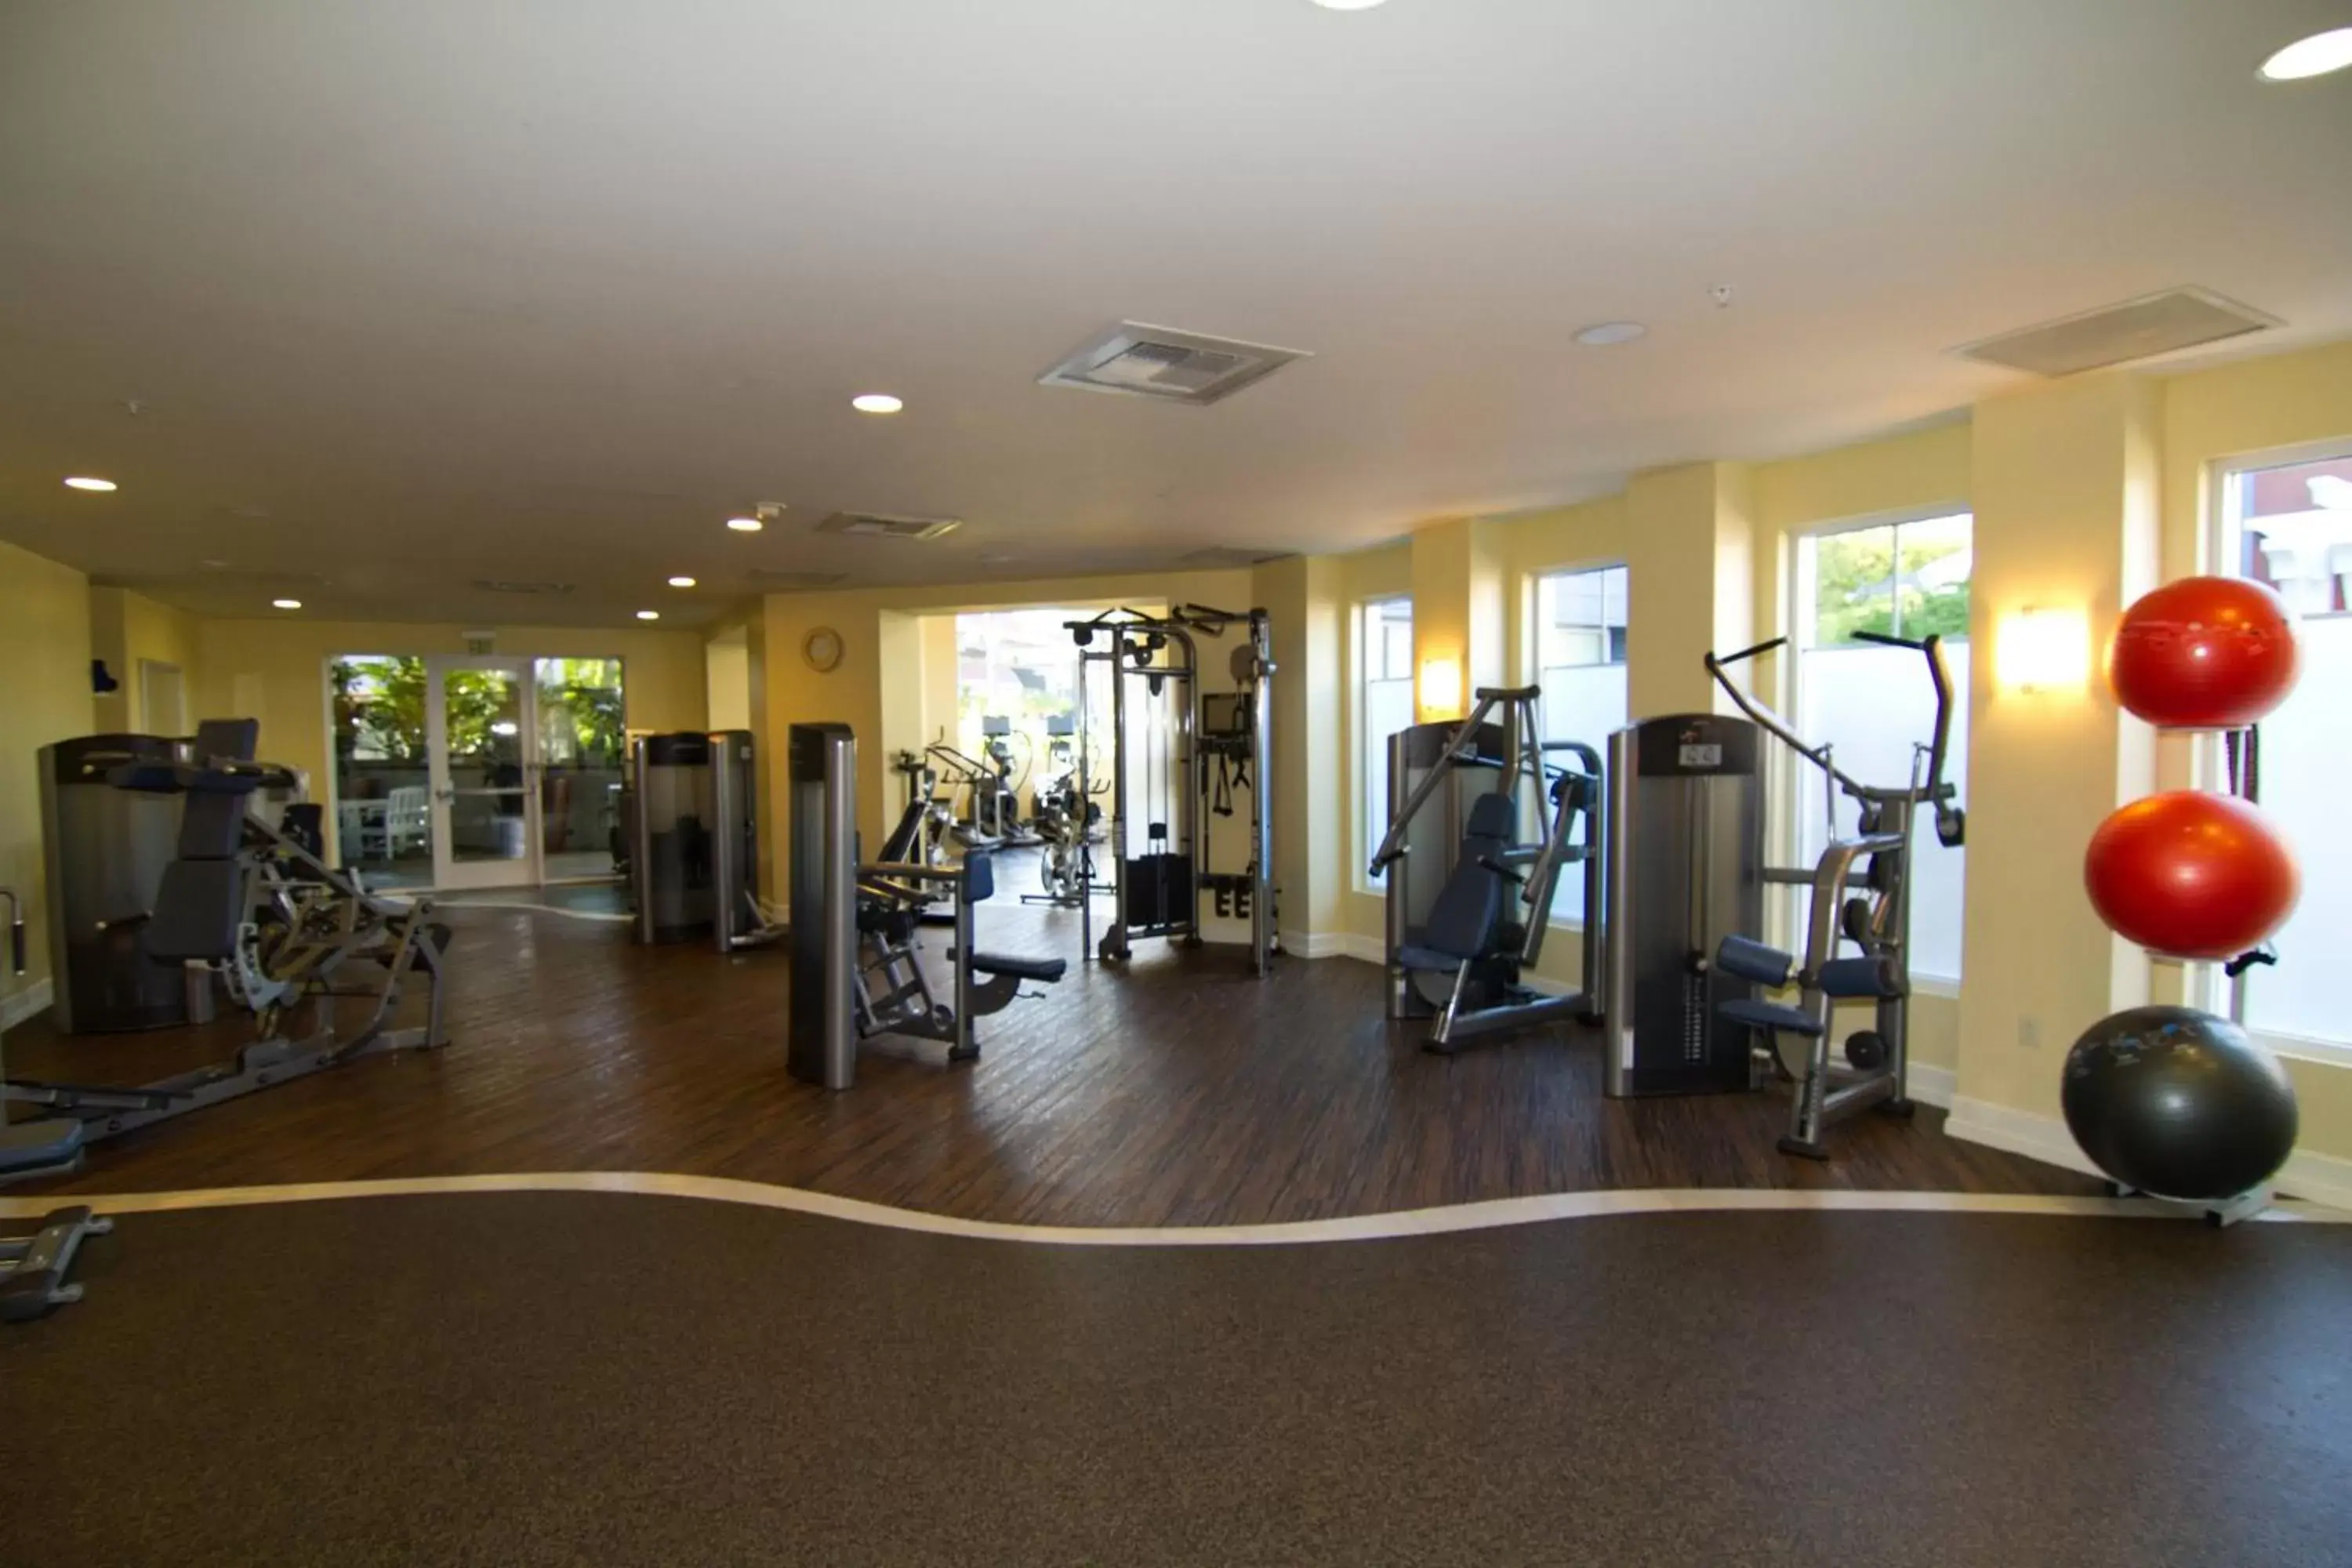 Fitness centre/facilities, Fitness Center/Facilities in Laguna Cliffs Marriott Resort & Spa